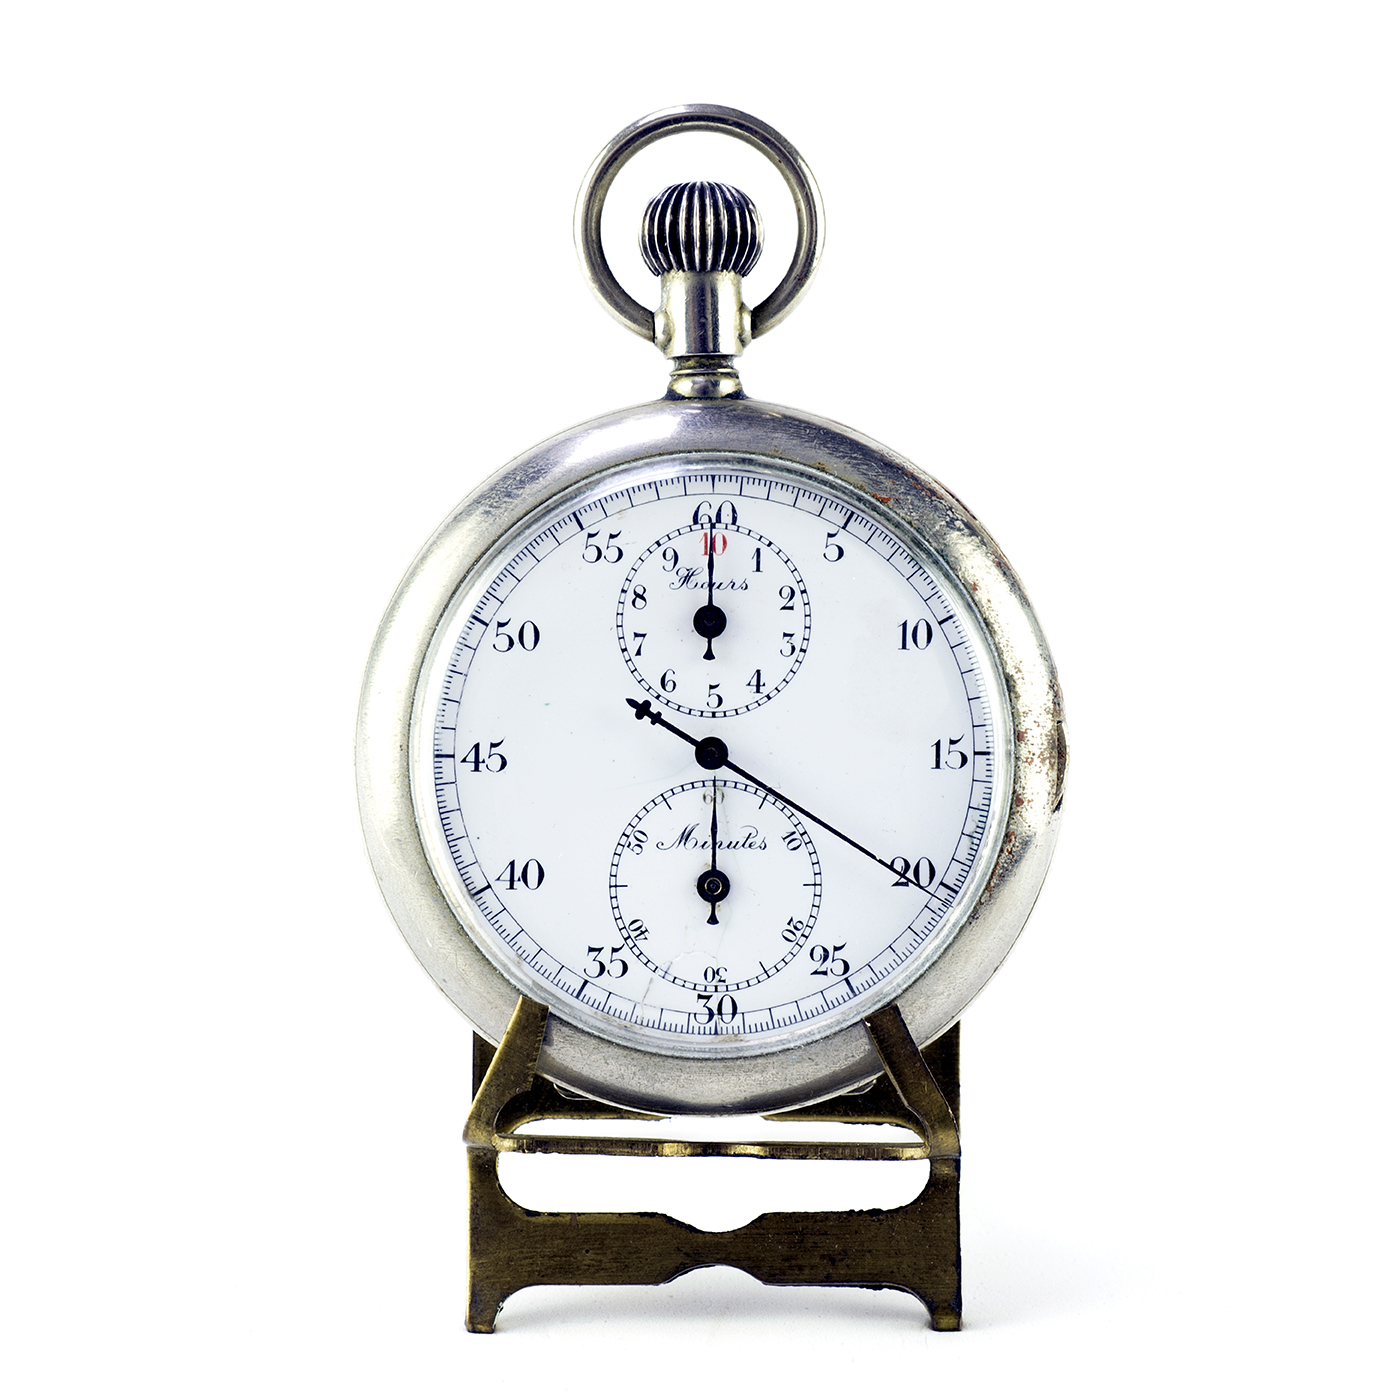 Chronomètre de poche, lepine. Suisse, vers 1900